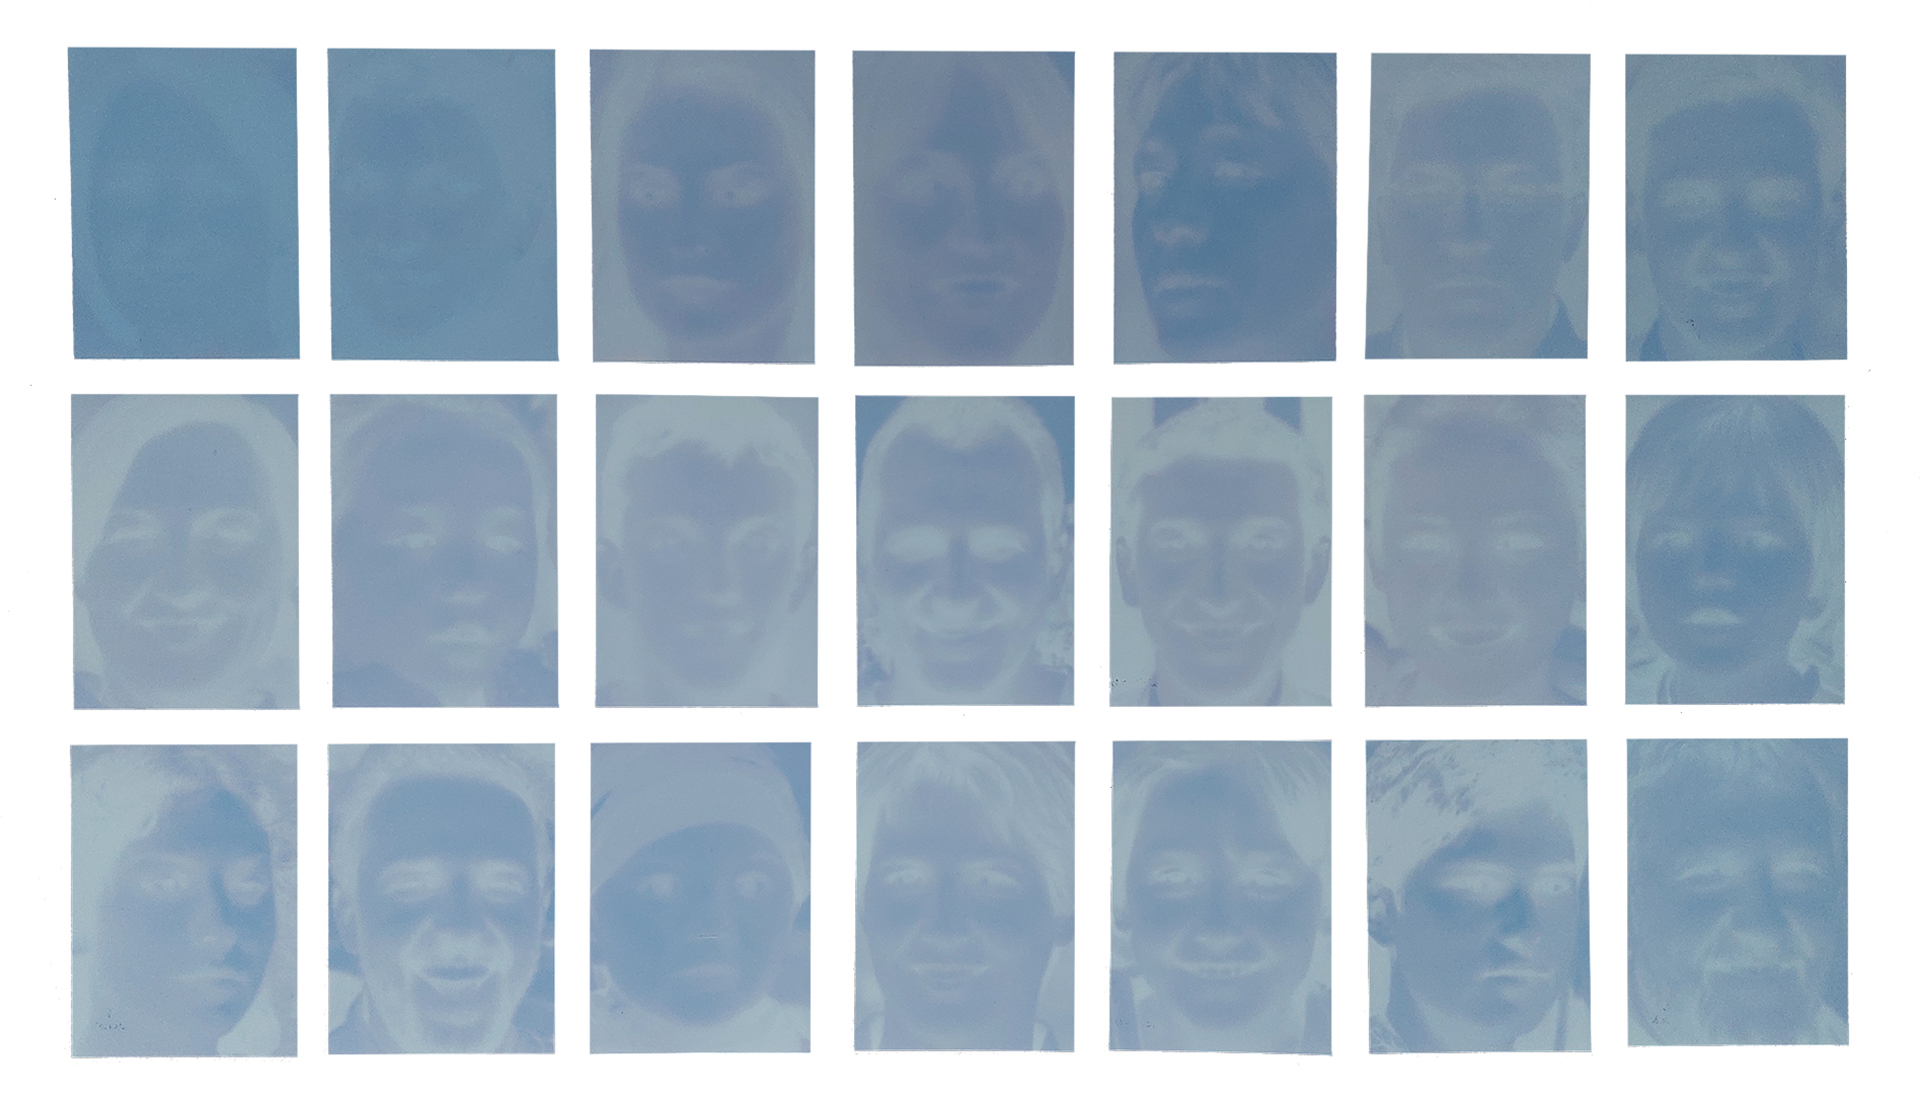 Kompozycja 21 zdjęć portretowych utrzymanych w błękitnej tonacji. 